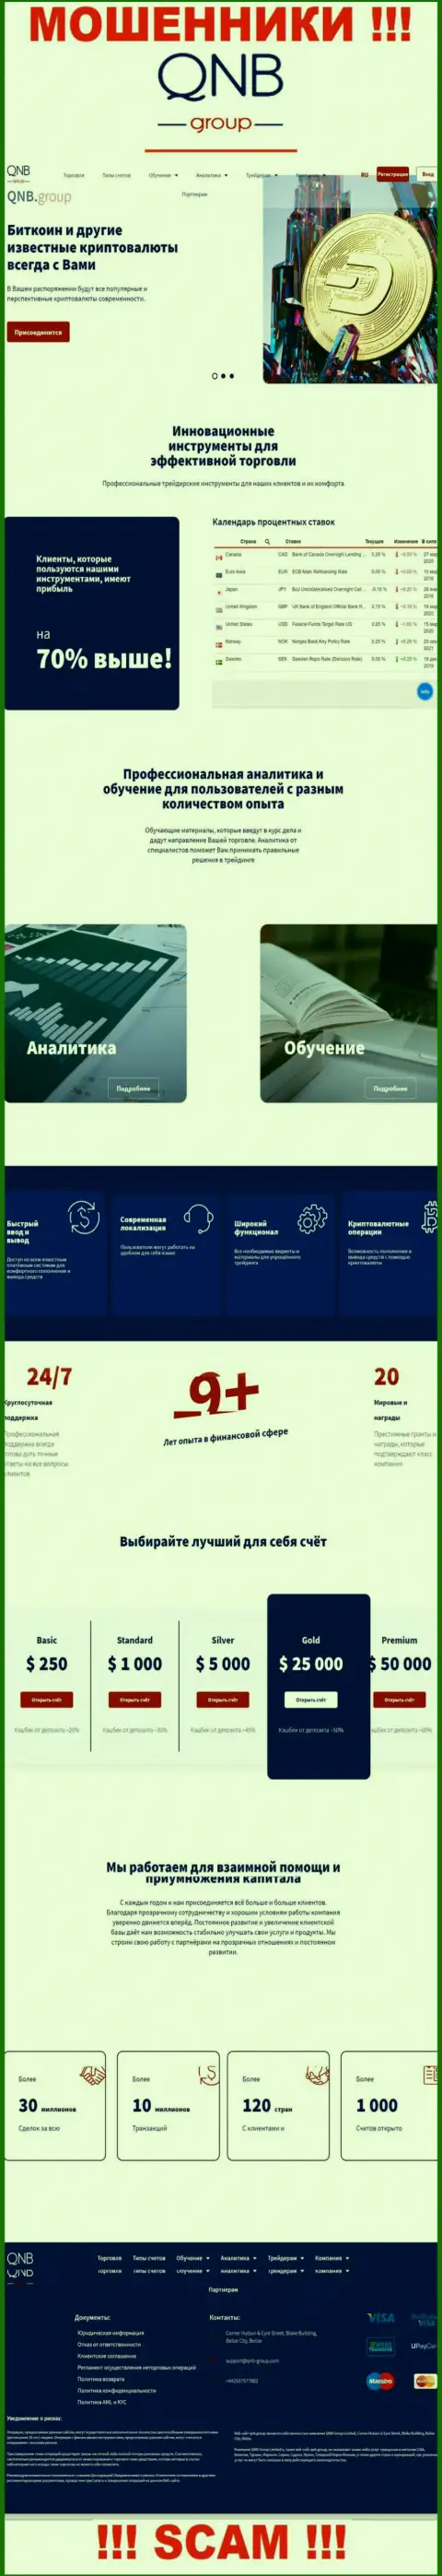 Официальный информационный ресурс шулеров КьюНБиГрупп, заполненный инфой для лохов